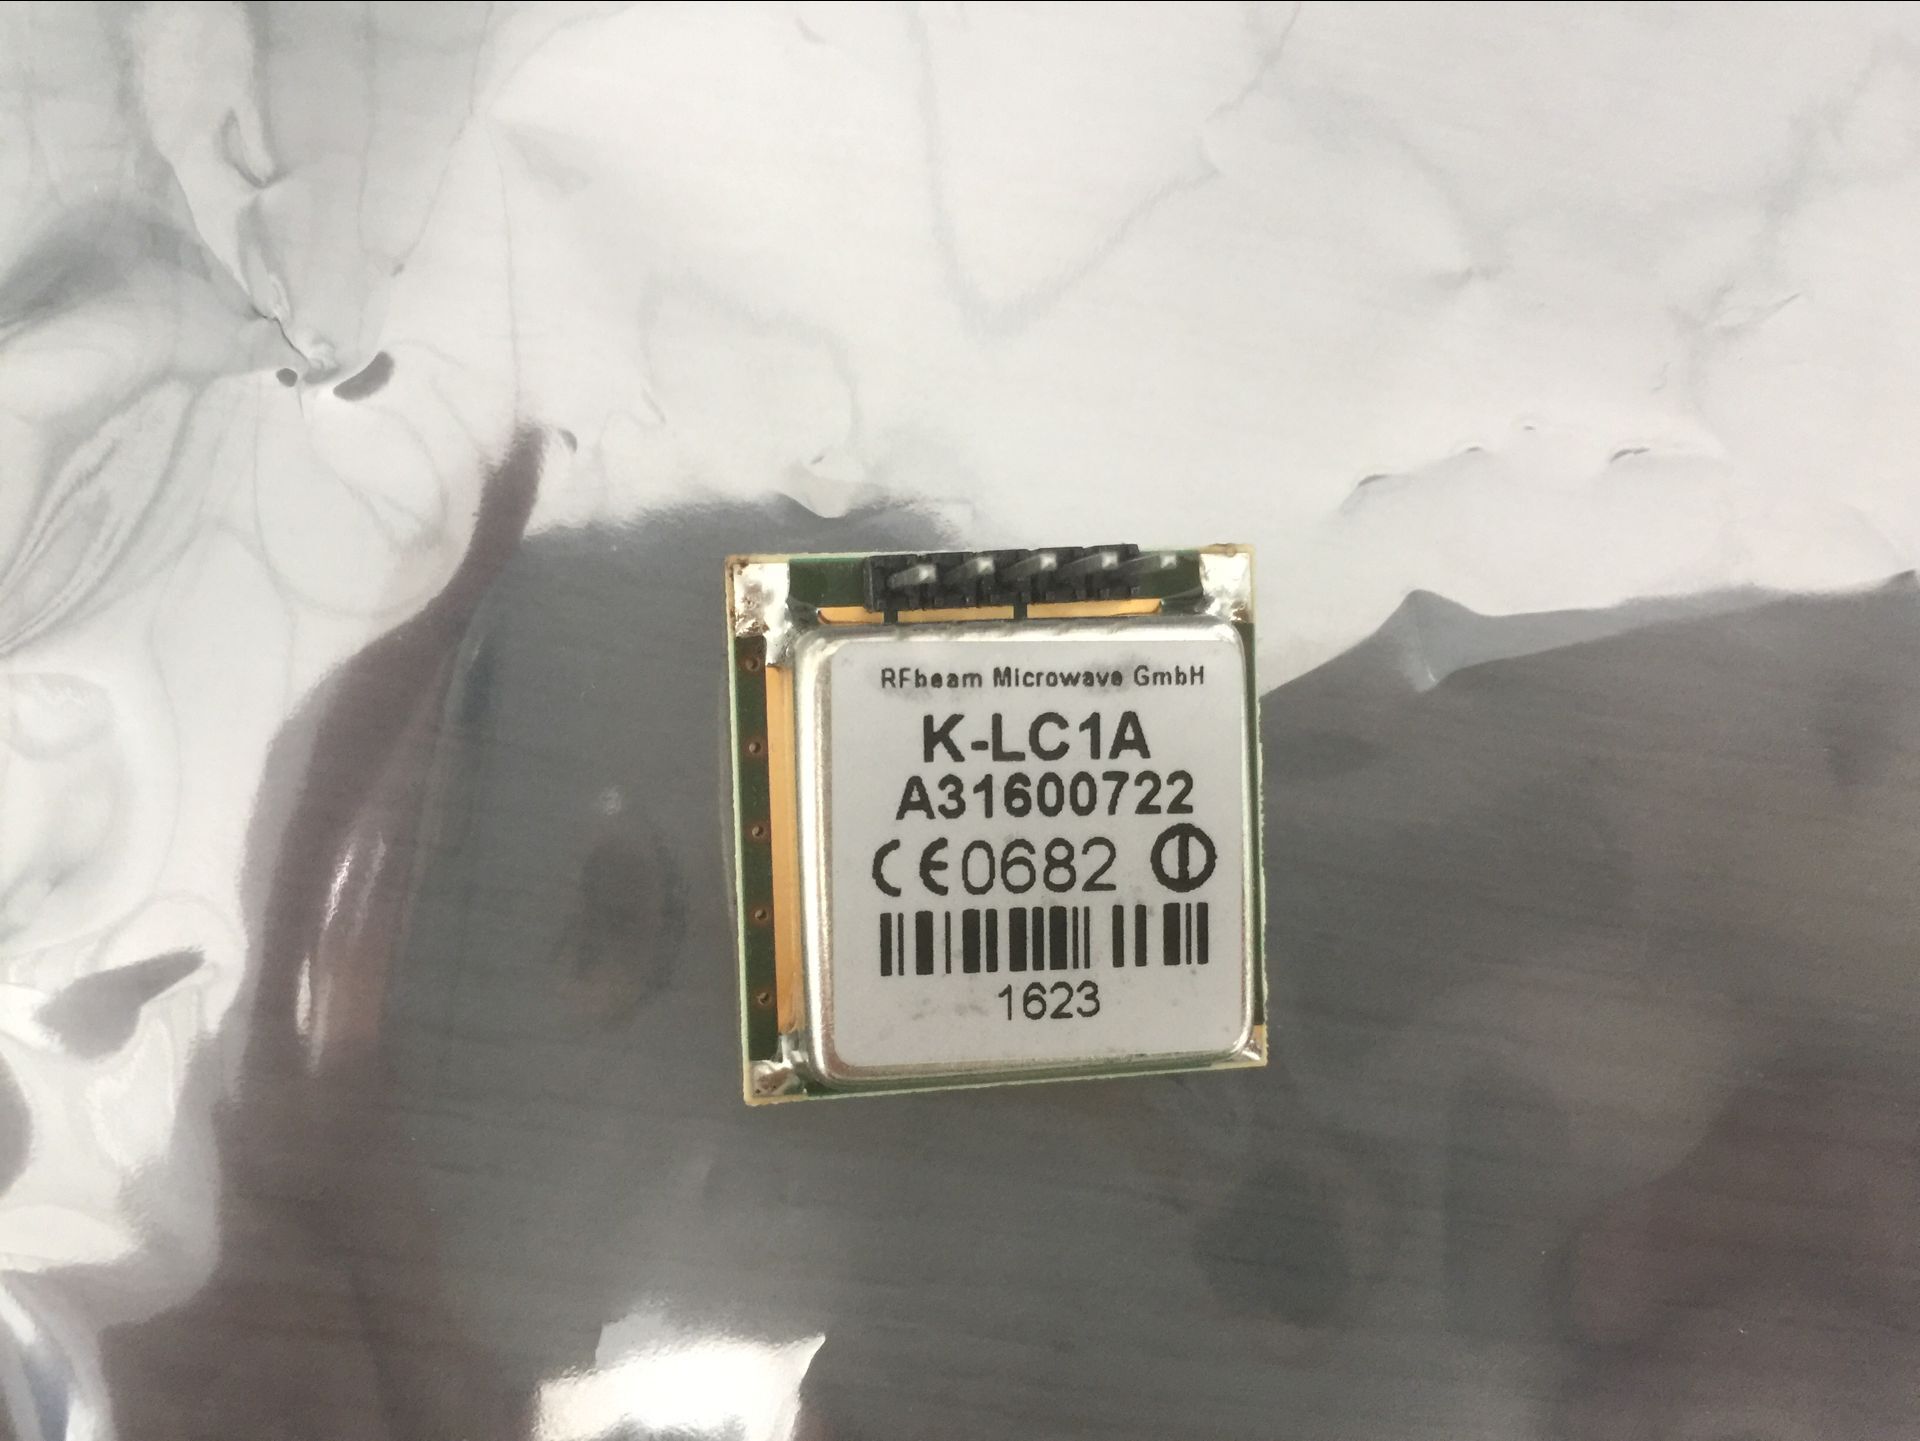 K-LC1A具有测速、测距、测方向功能